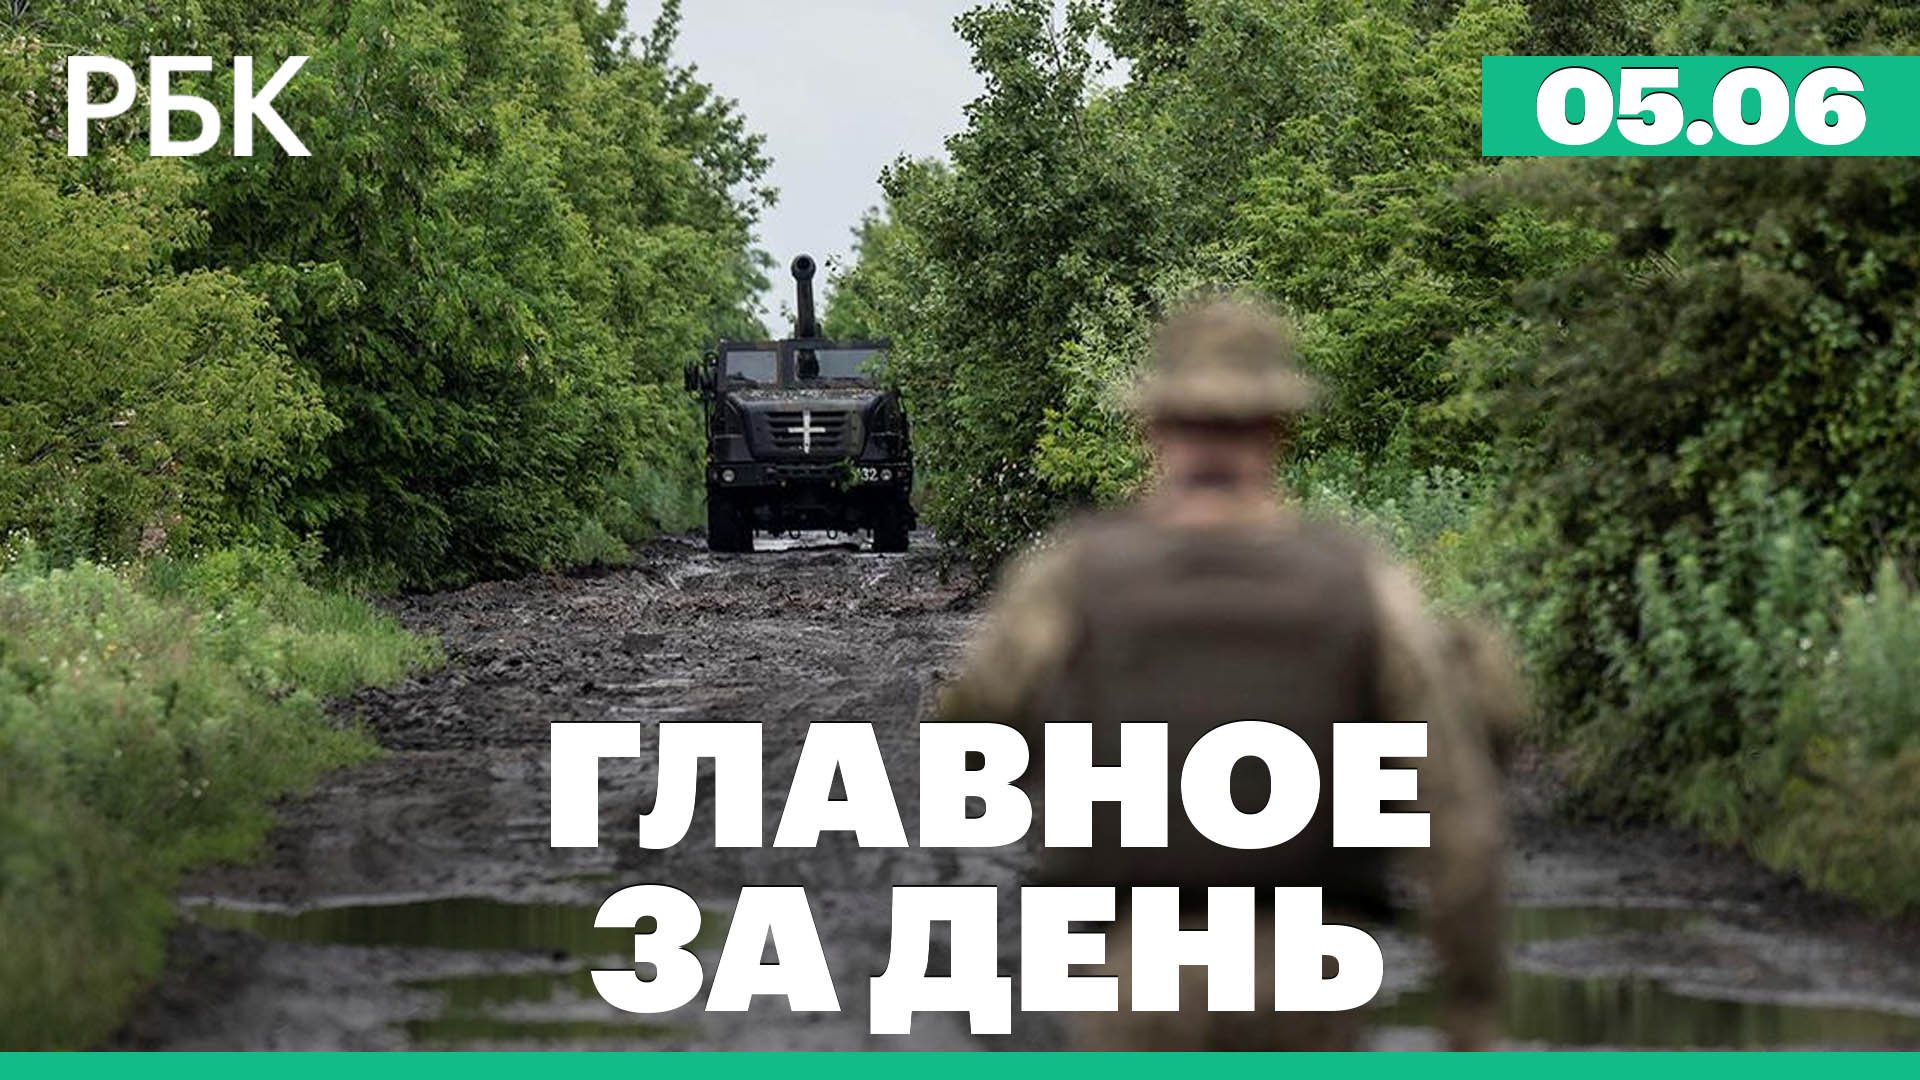 Над Белгородом сработала система ПВО, попытка прорыва украинских ДРГ, отравление сидром